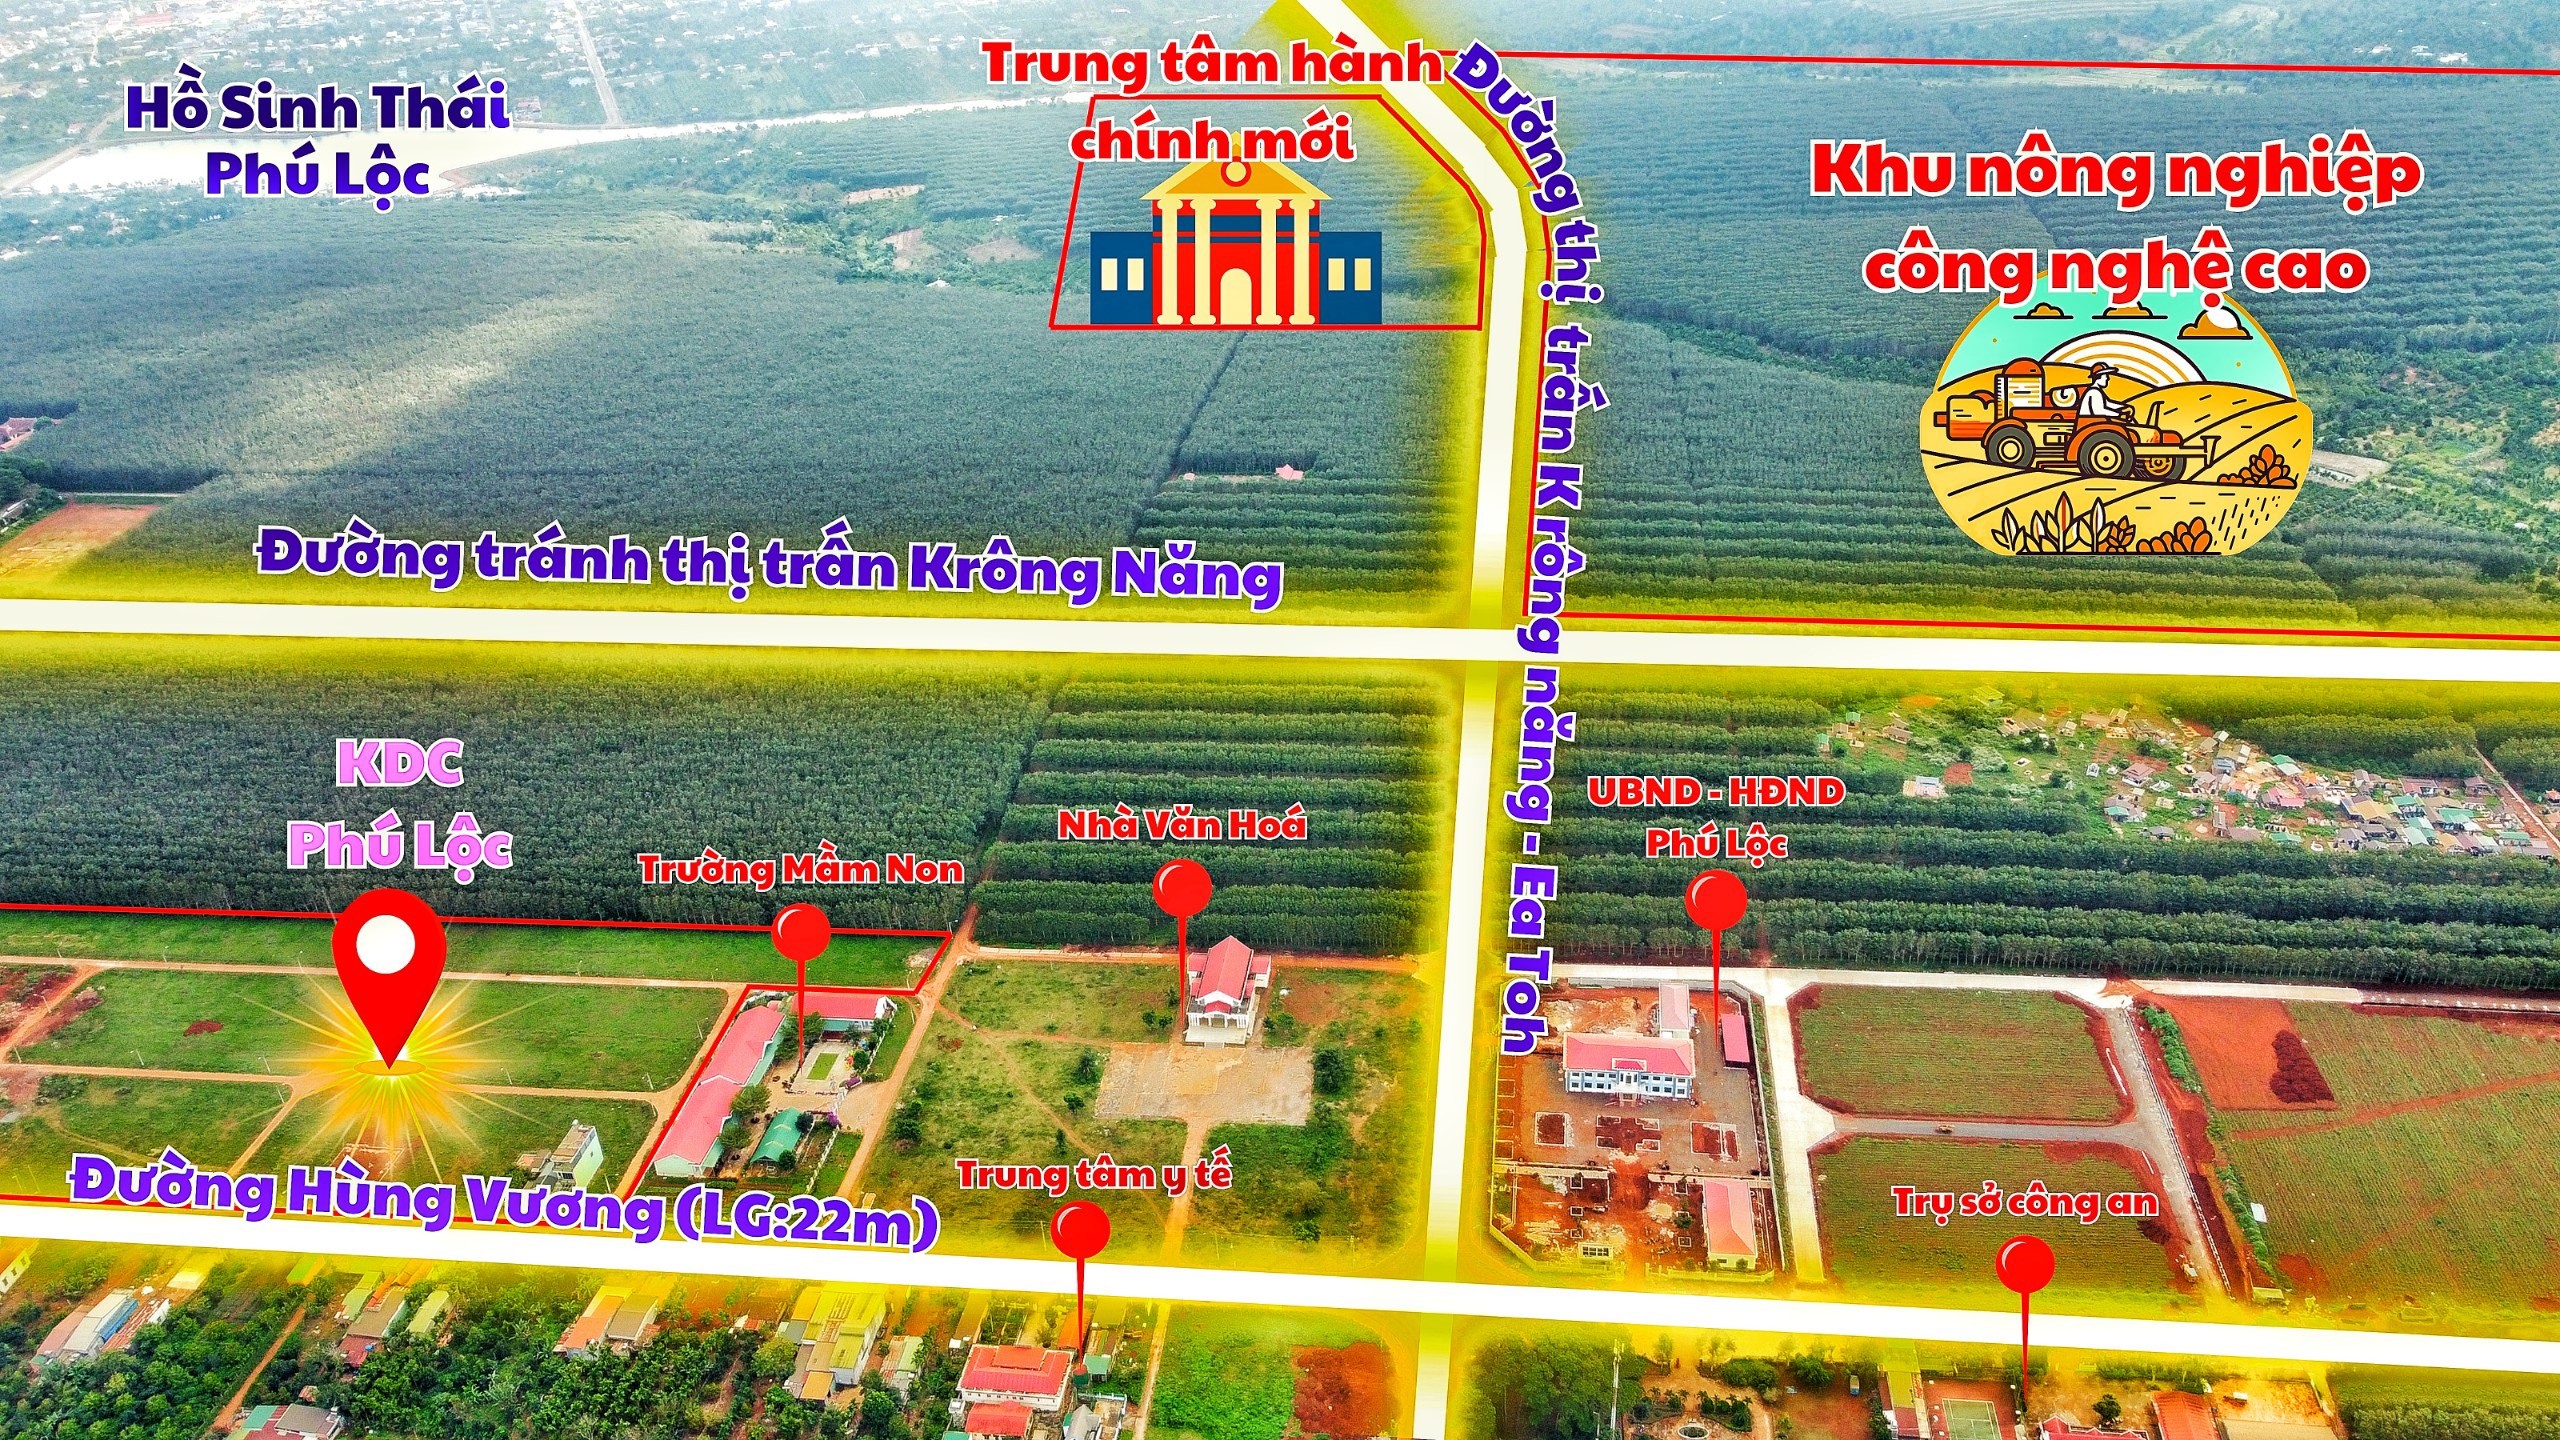 Cơn sốt Phú Lộc Đắk Lắk dịp cuối năm 2023, CHỚP CƠ HỘI SĂN TƯƠNG LAI 6